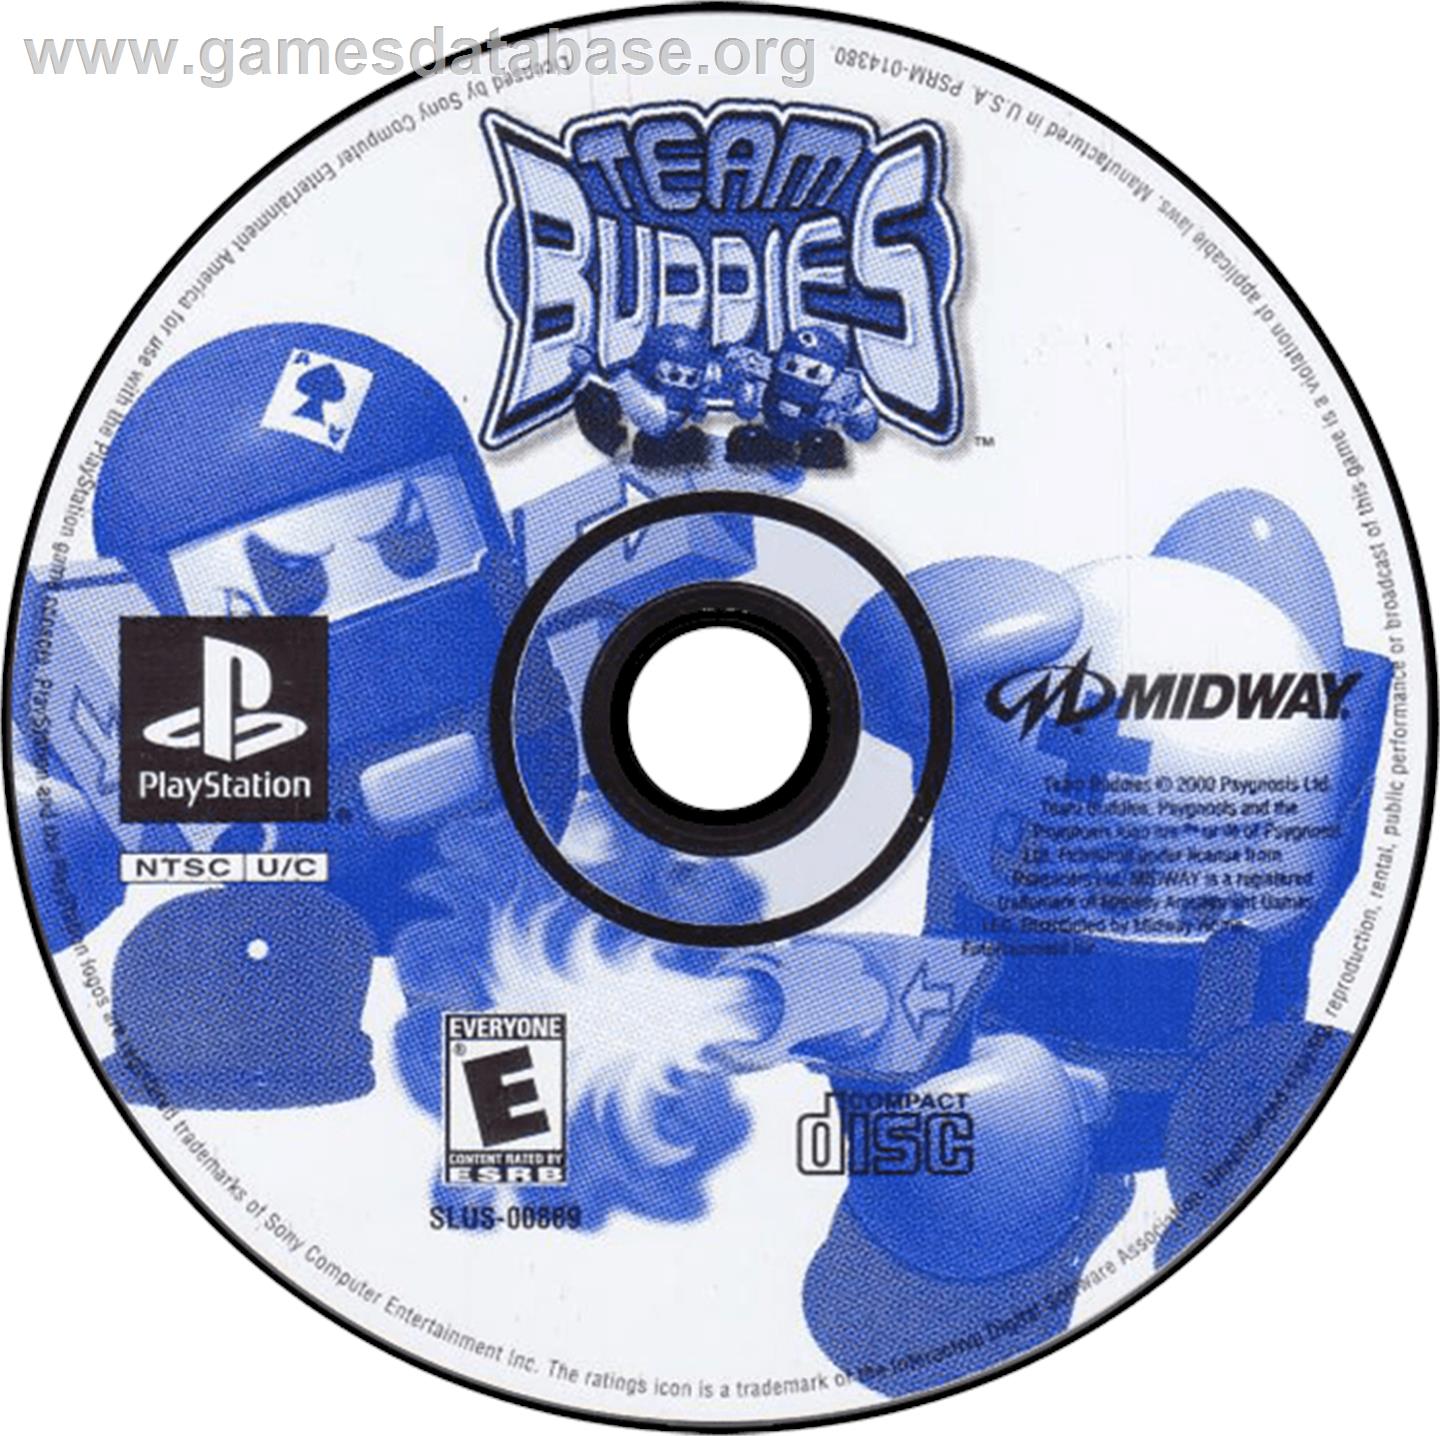 Team Buddies - Sony Playstation - Artwork - Disc